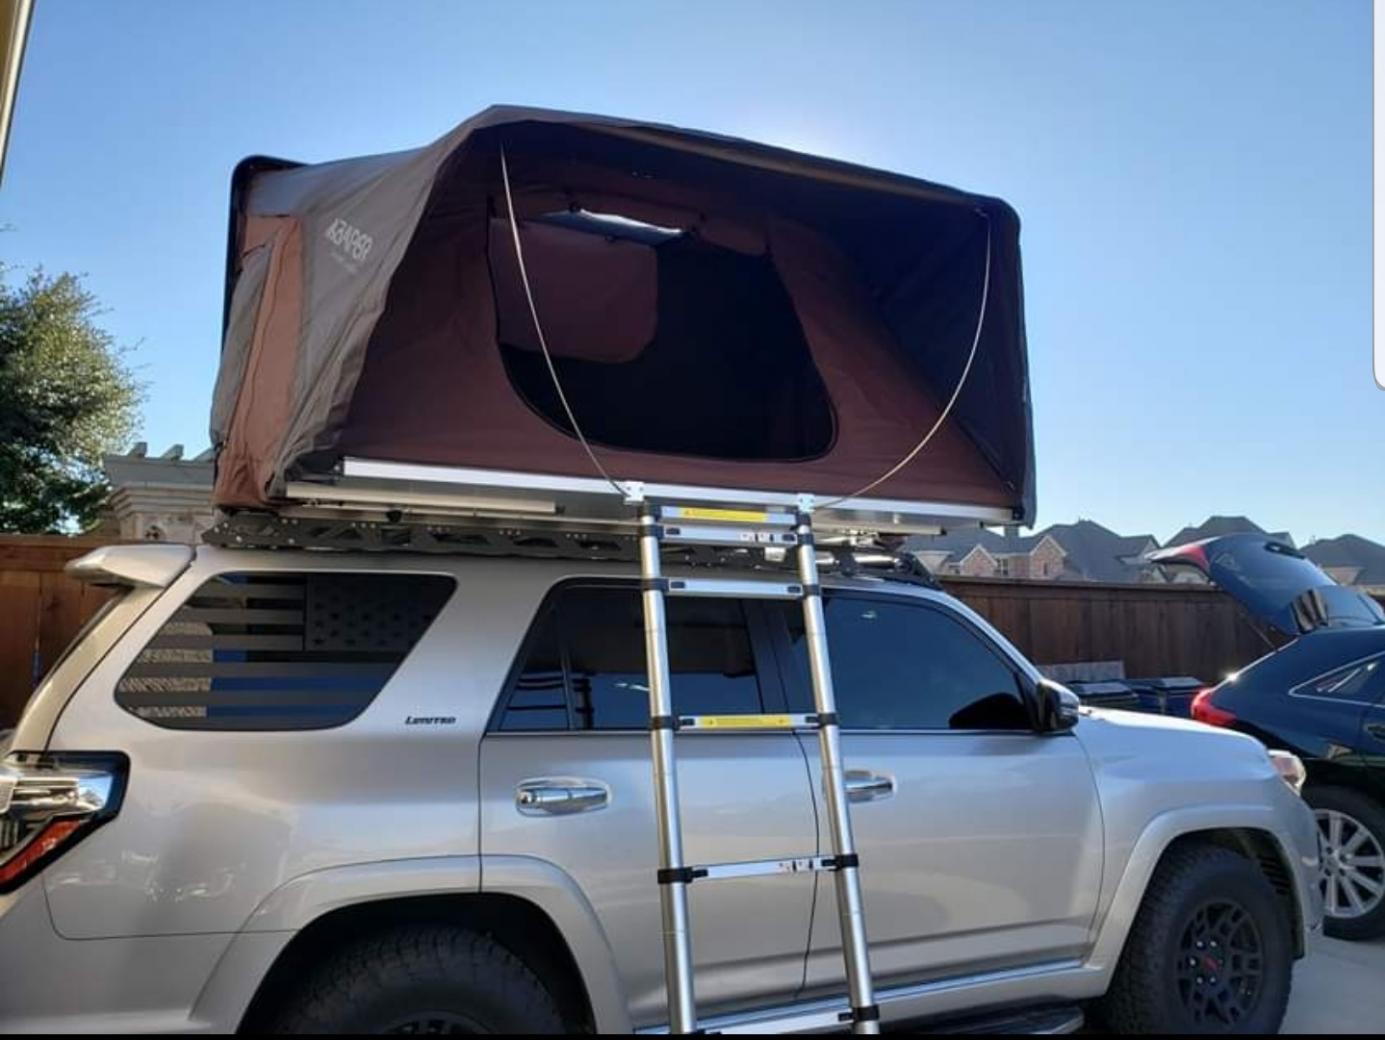 FS: Overland/Camping Trailer with iKamper Skycamp RTT, North Dallas, Texas - 00-rtt5-jpg